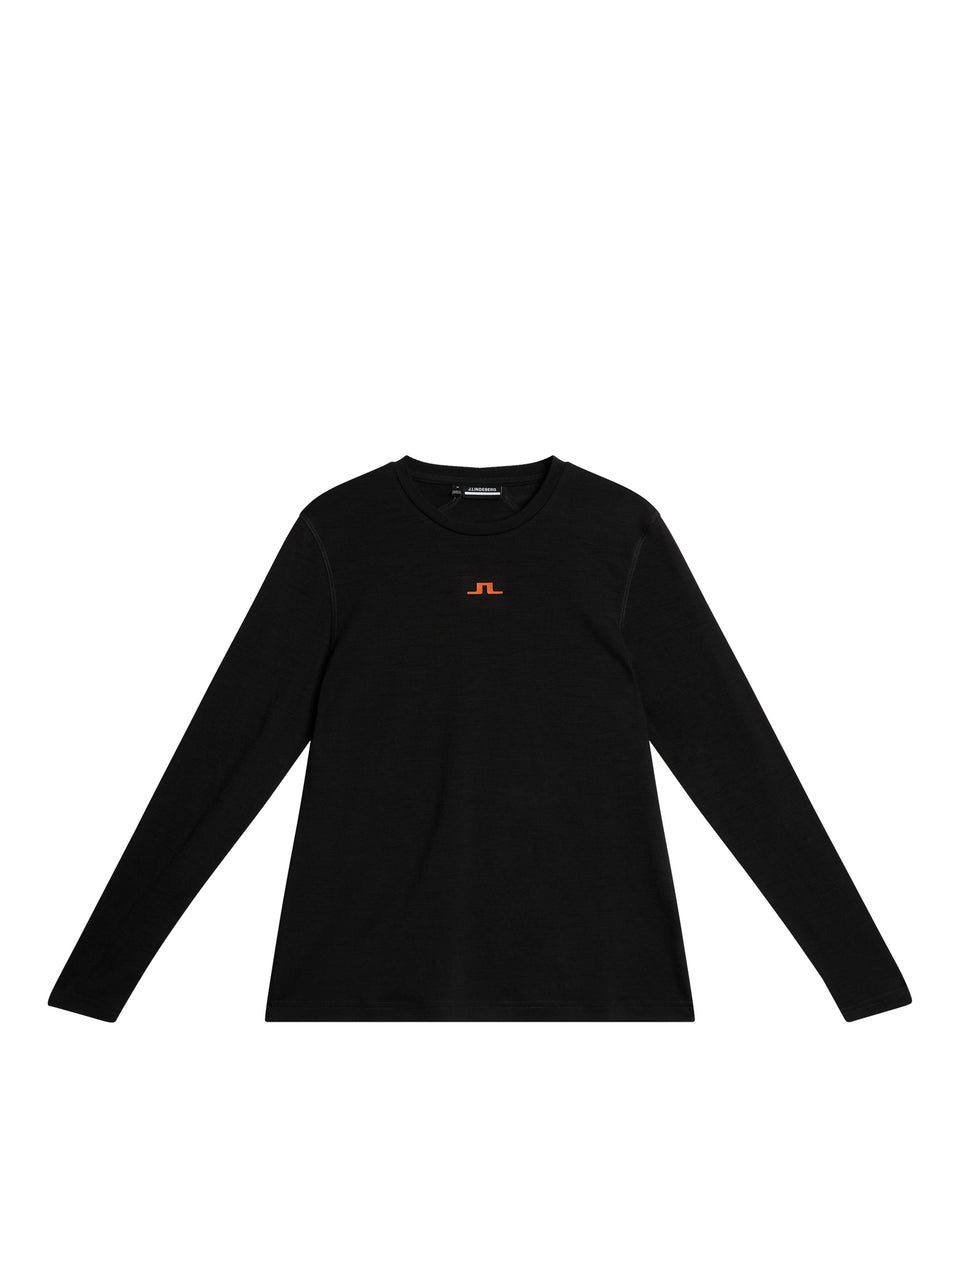 Shauna Wool LS T-shirt / Black